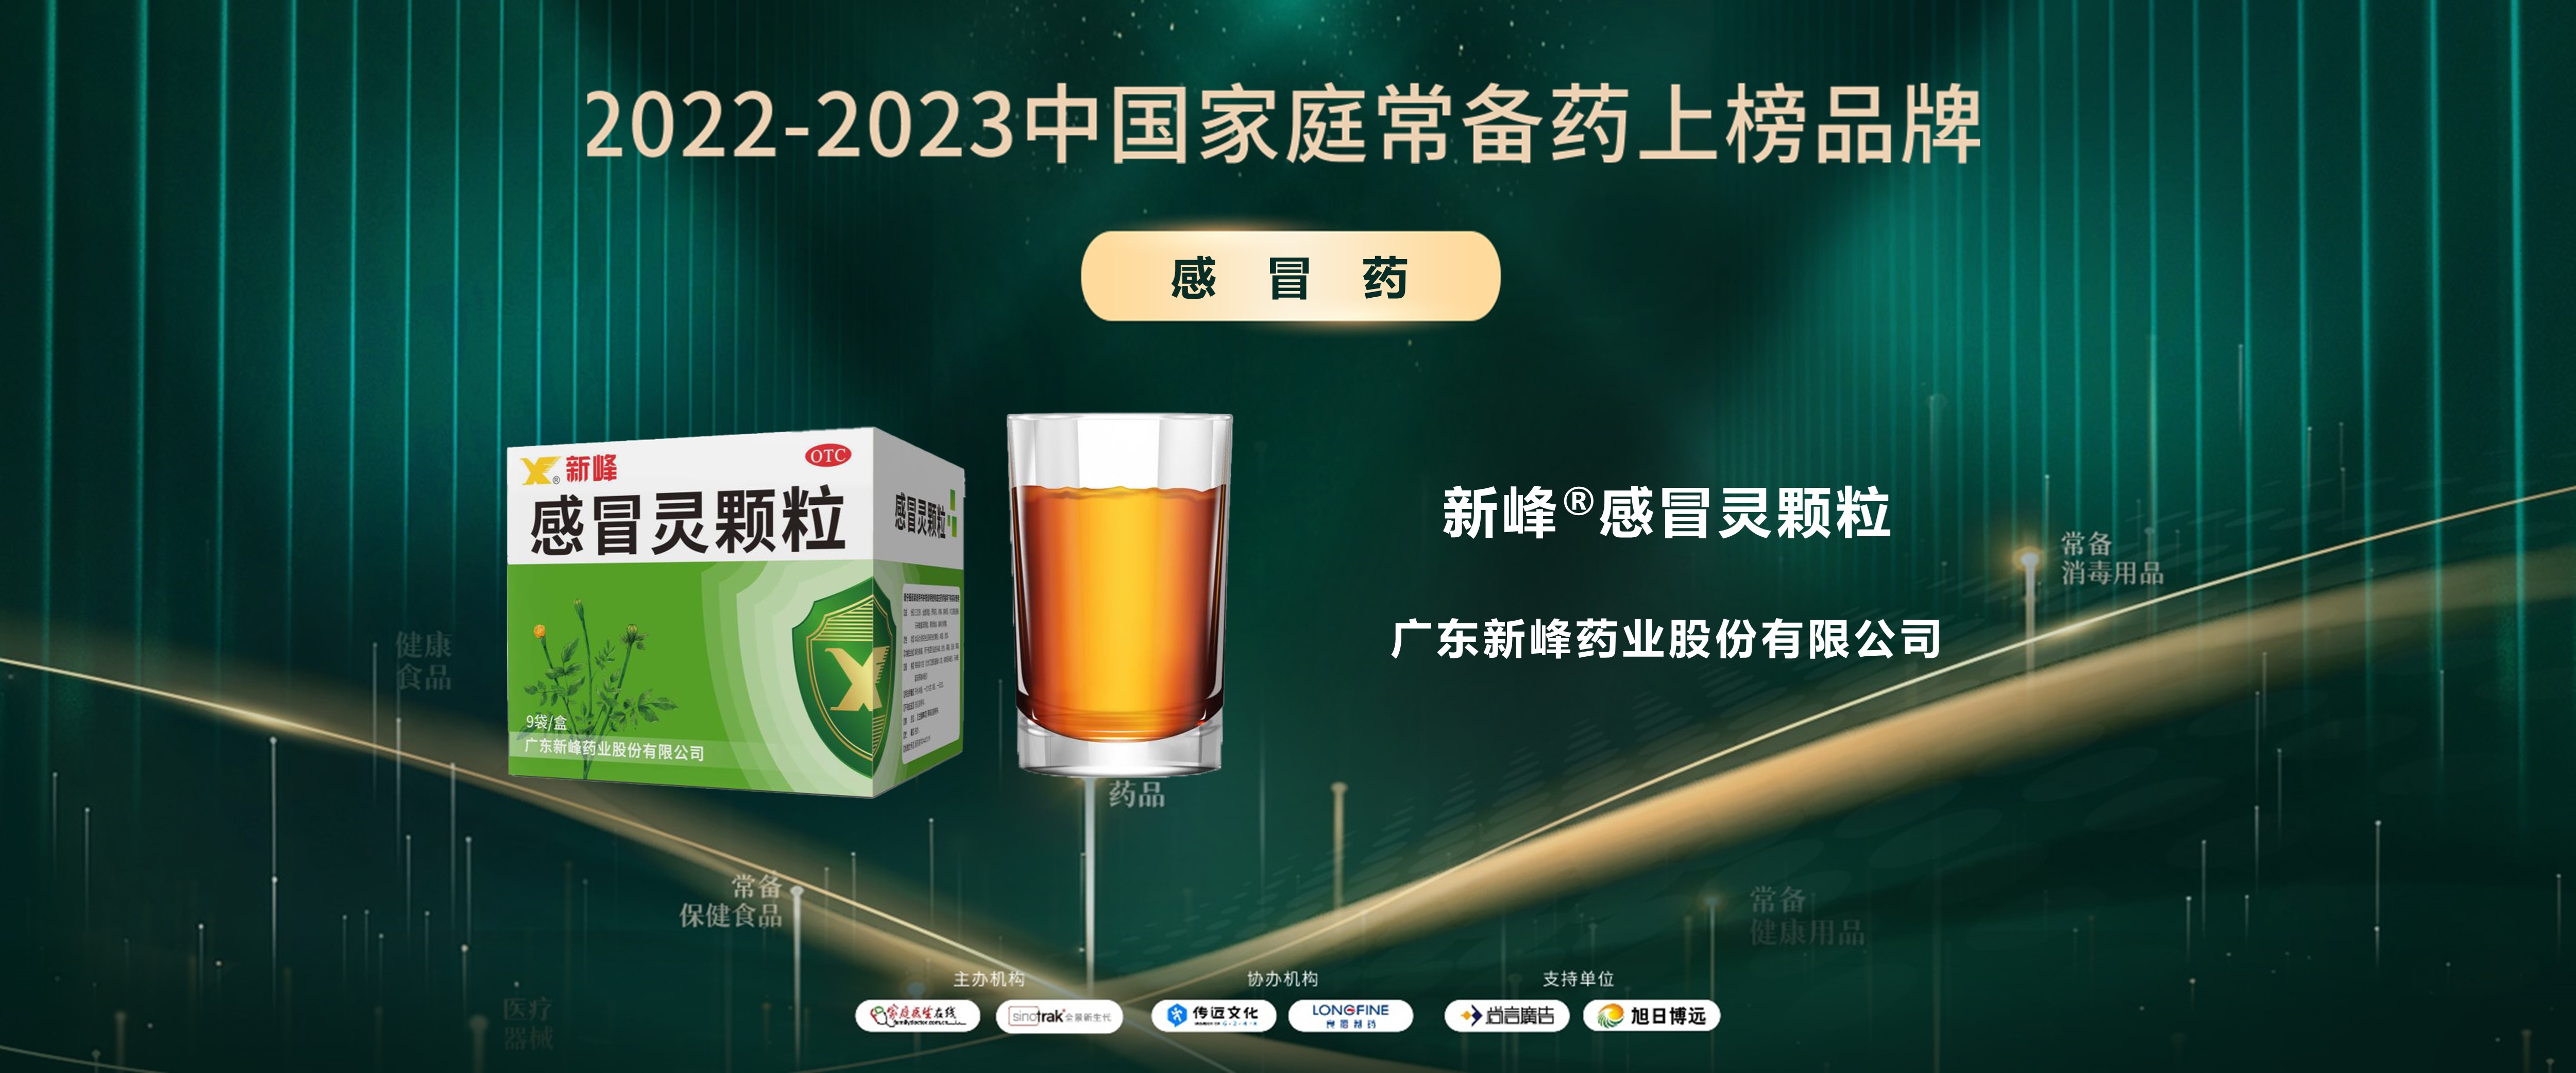 “2022-2023中国家庭常备药上榜品牌”重磅发布！广东新峰家中常备药多点开花